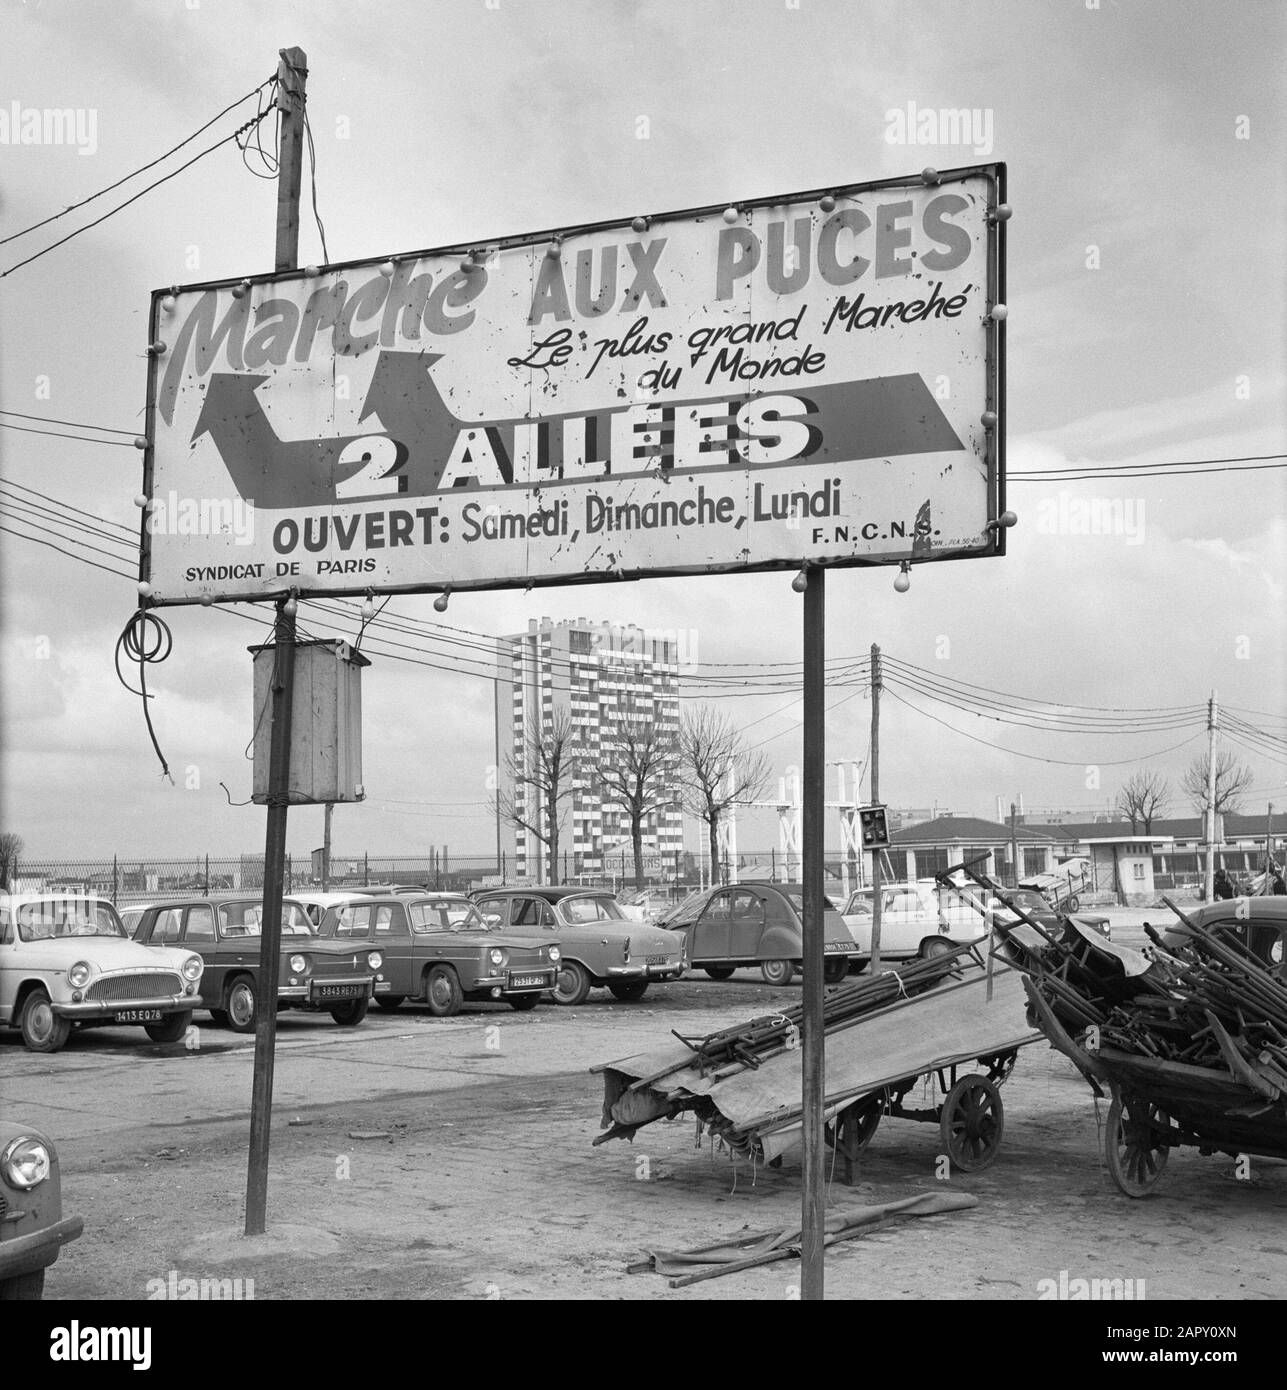 Pariser Bilder [la vita di strada di Parigi] Sigpost al mercato delle pulci Data: 1965 Località: Francia, Parigi Parole Chiave: Namesplates, immagini di strada Foto Stock